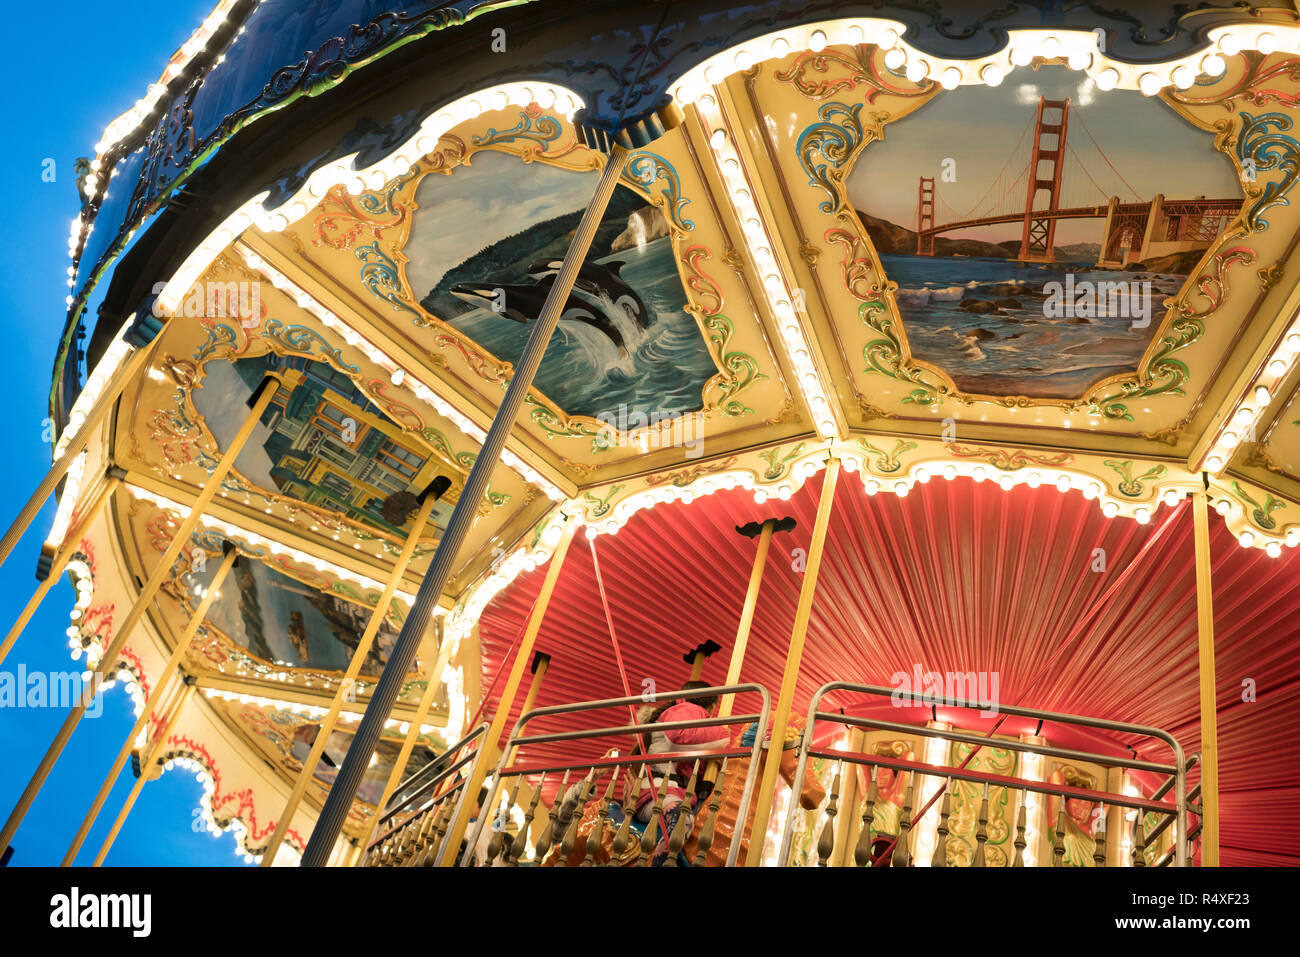 Un vieux Carrousel, peint avec des scènes de la vie de San Francisco dans une fin de journée la lumière, Pier 39, San Francisco, California, USA Banque D'Images